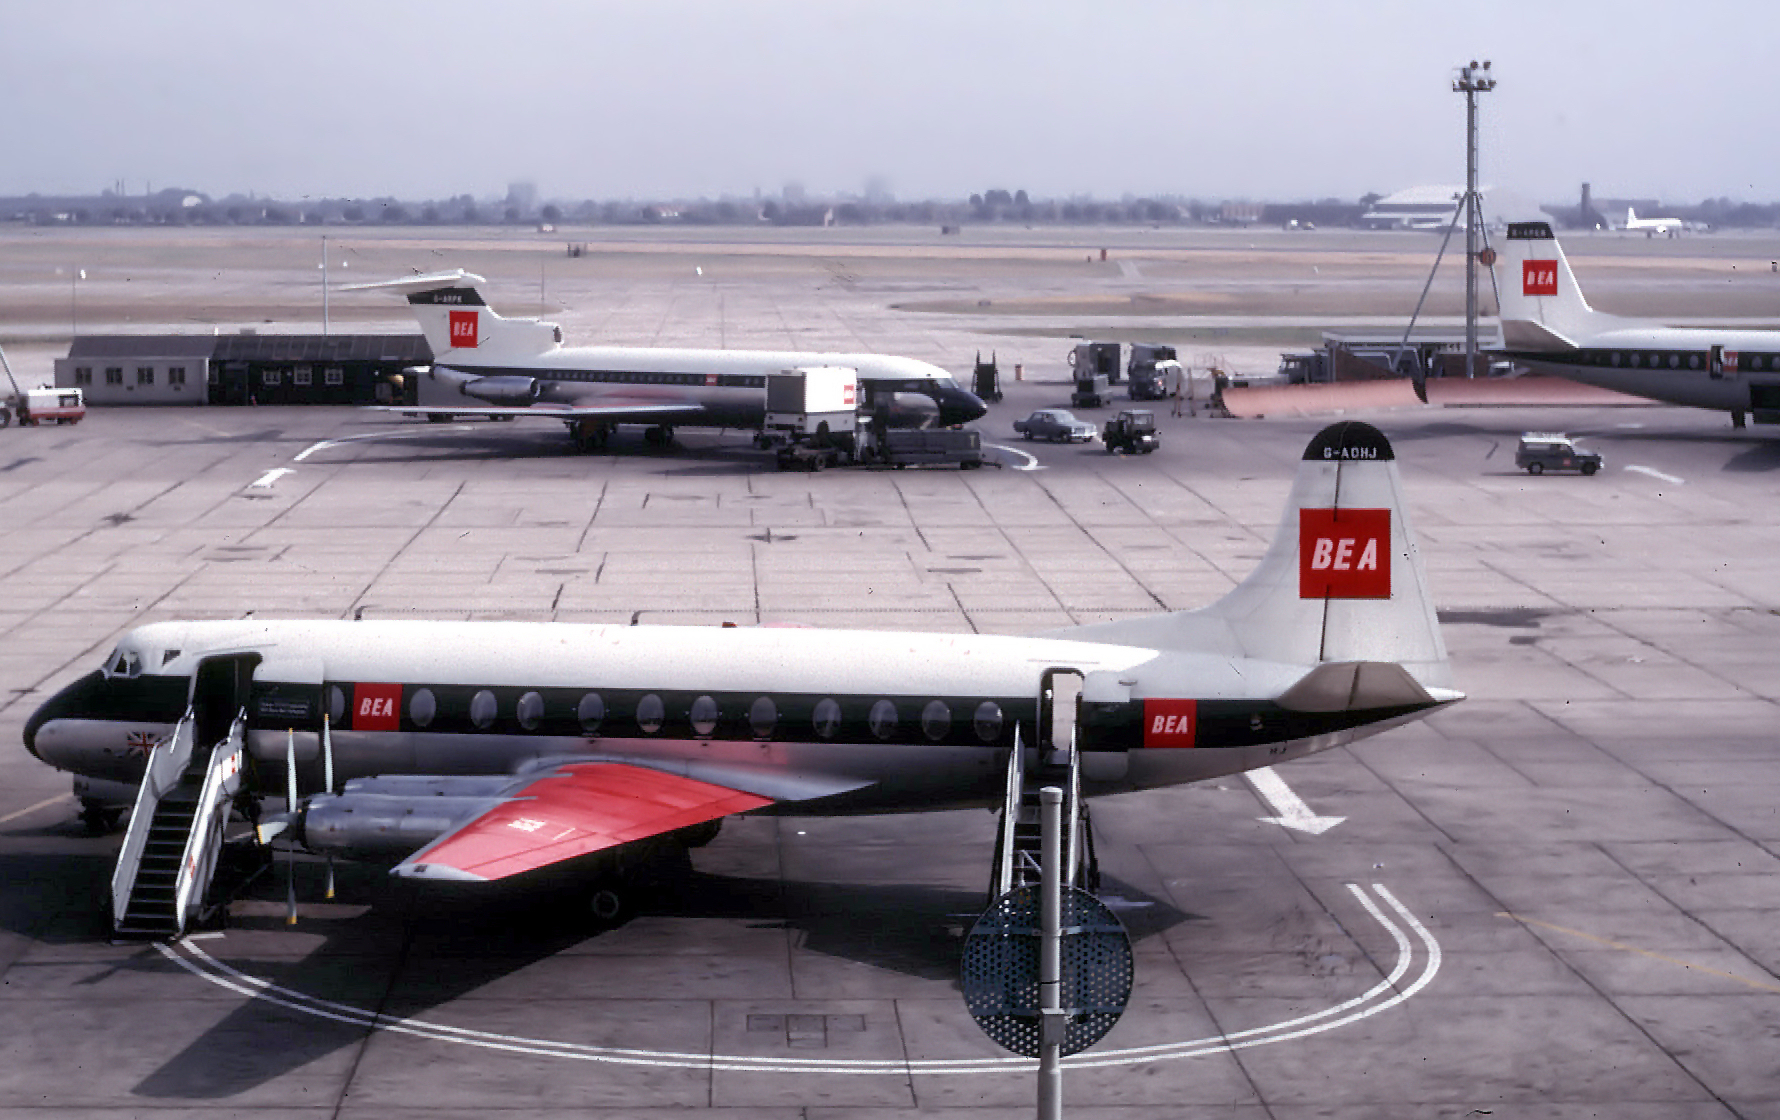 Vickers Viscount previous